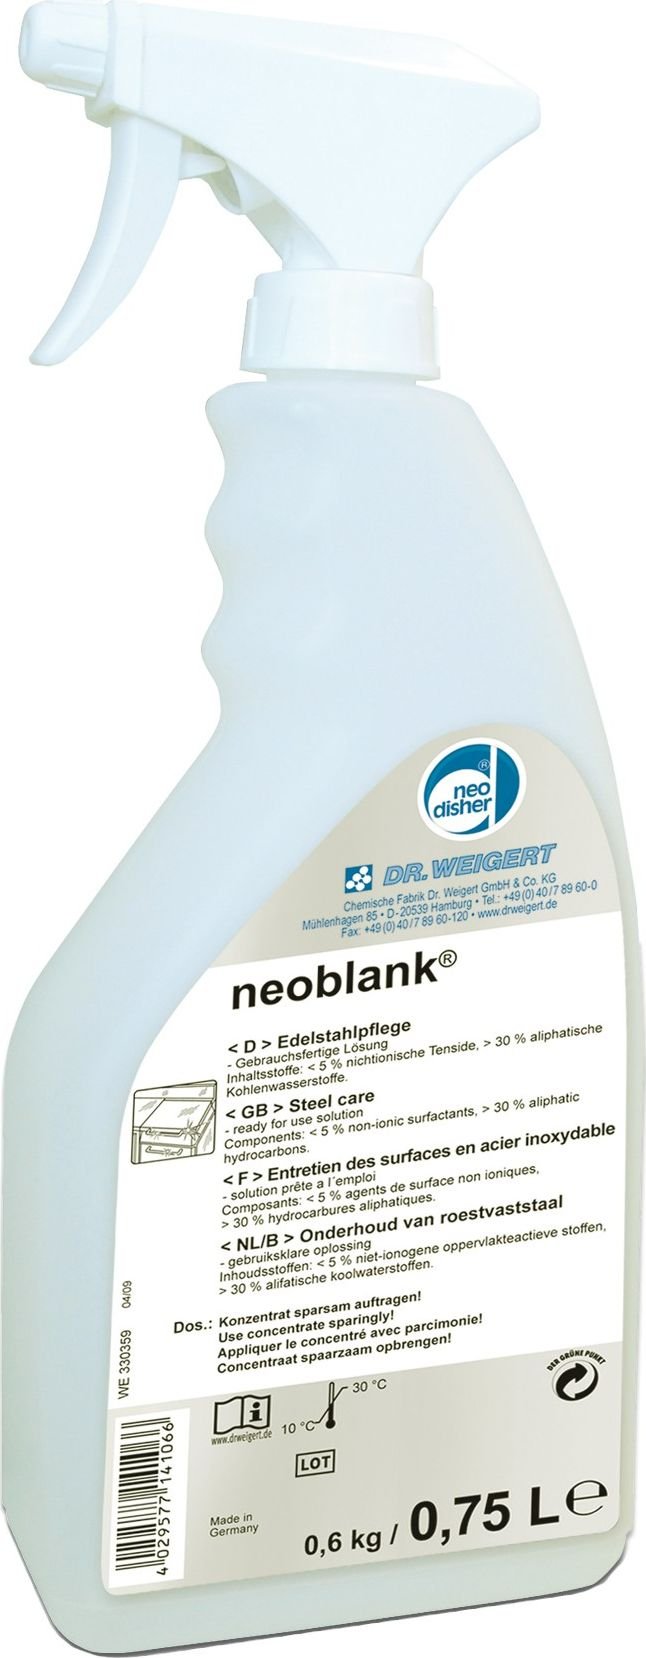 Neodisher Neoblank - Agent de îngrijire pentru oțel inoxidabil - 0,75 L